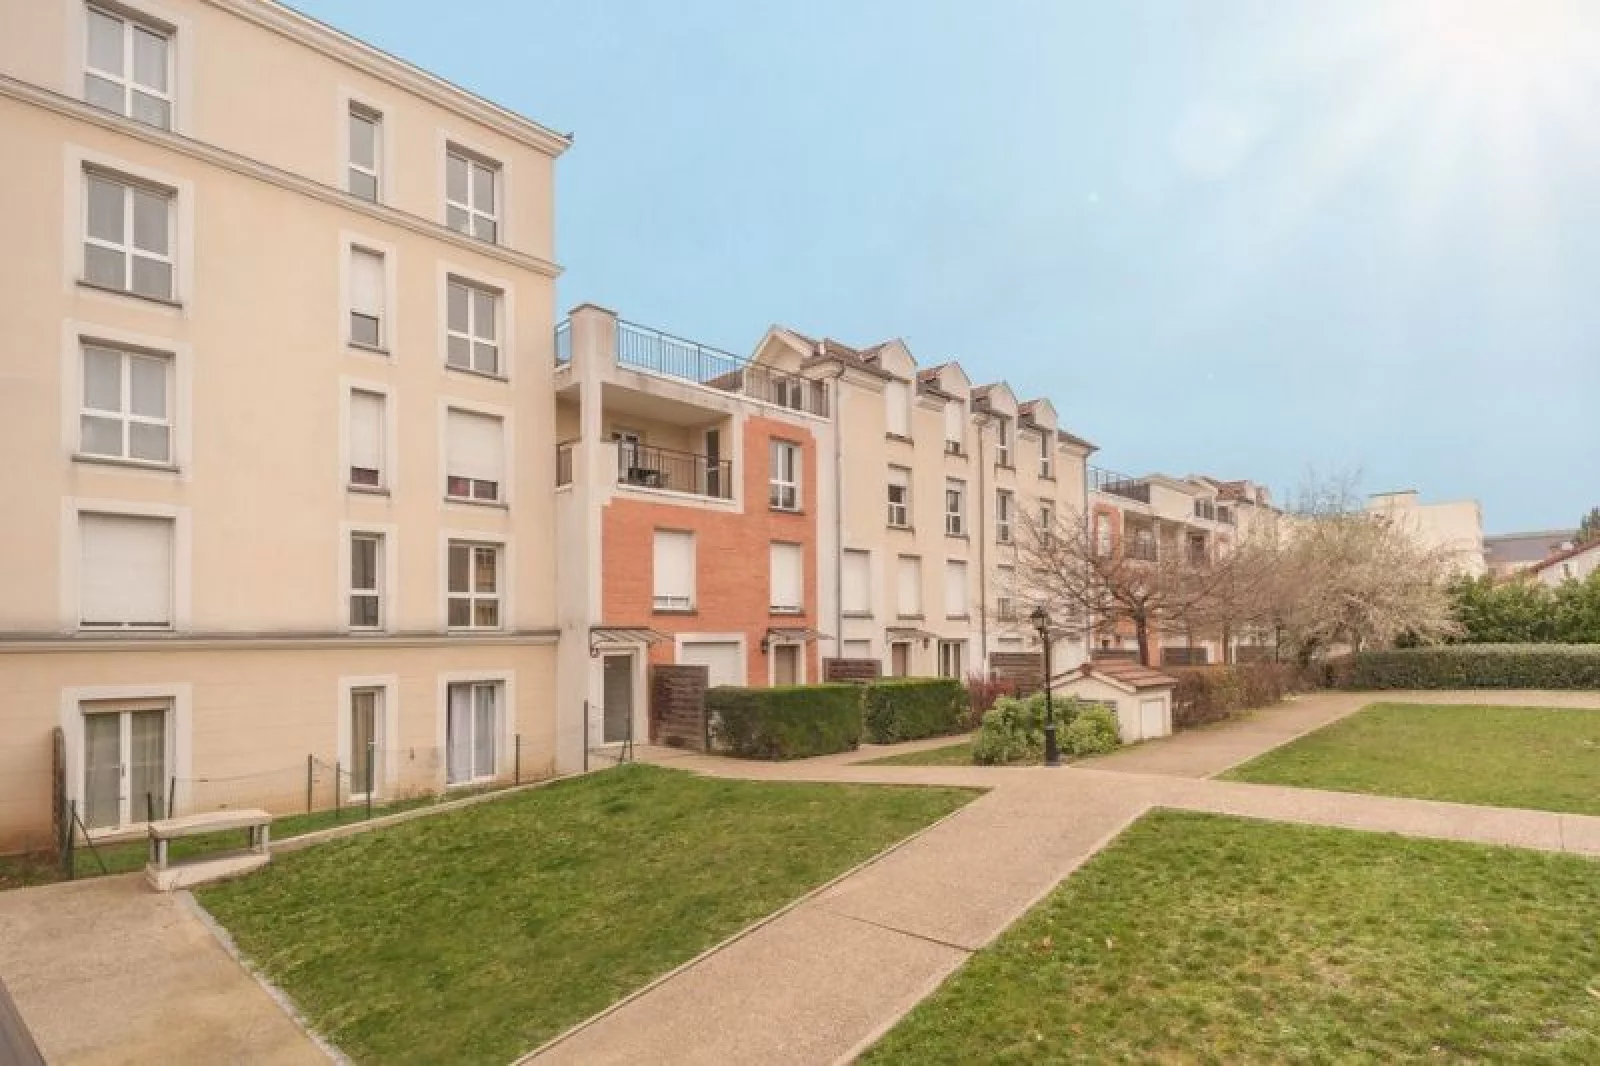 Location appartement duplex T4 de 82m avec parking (Paris est - Bry sur Marne)